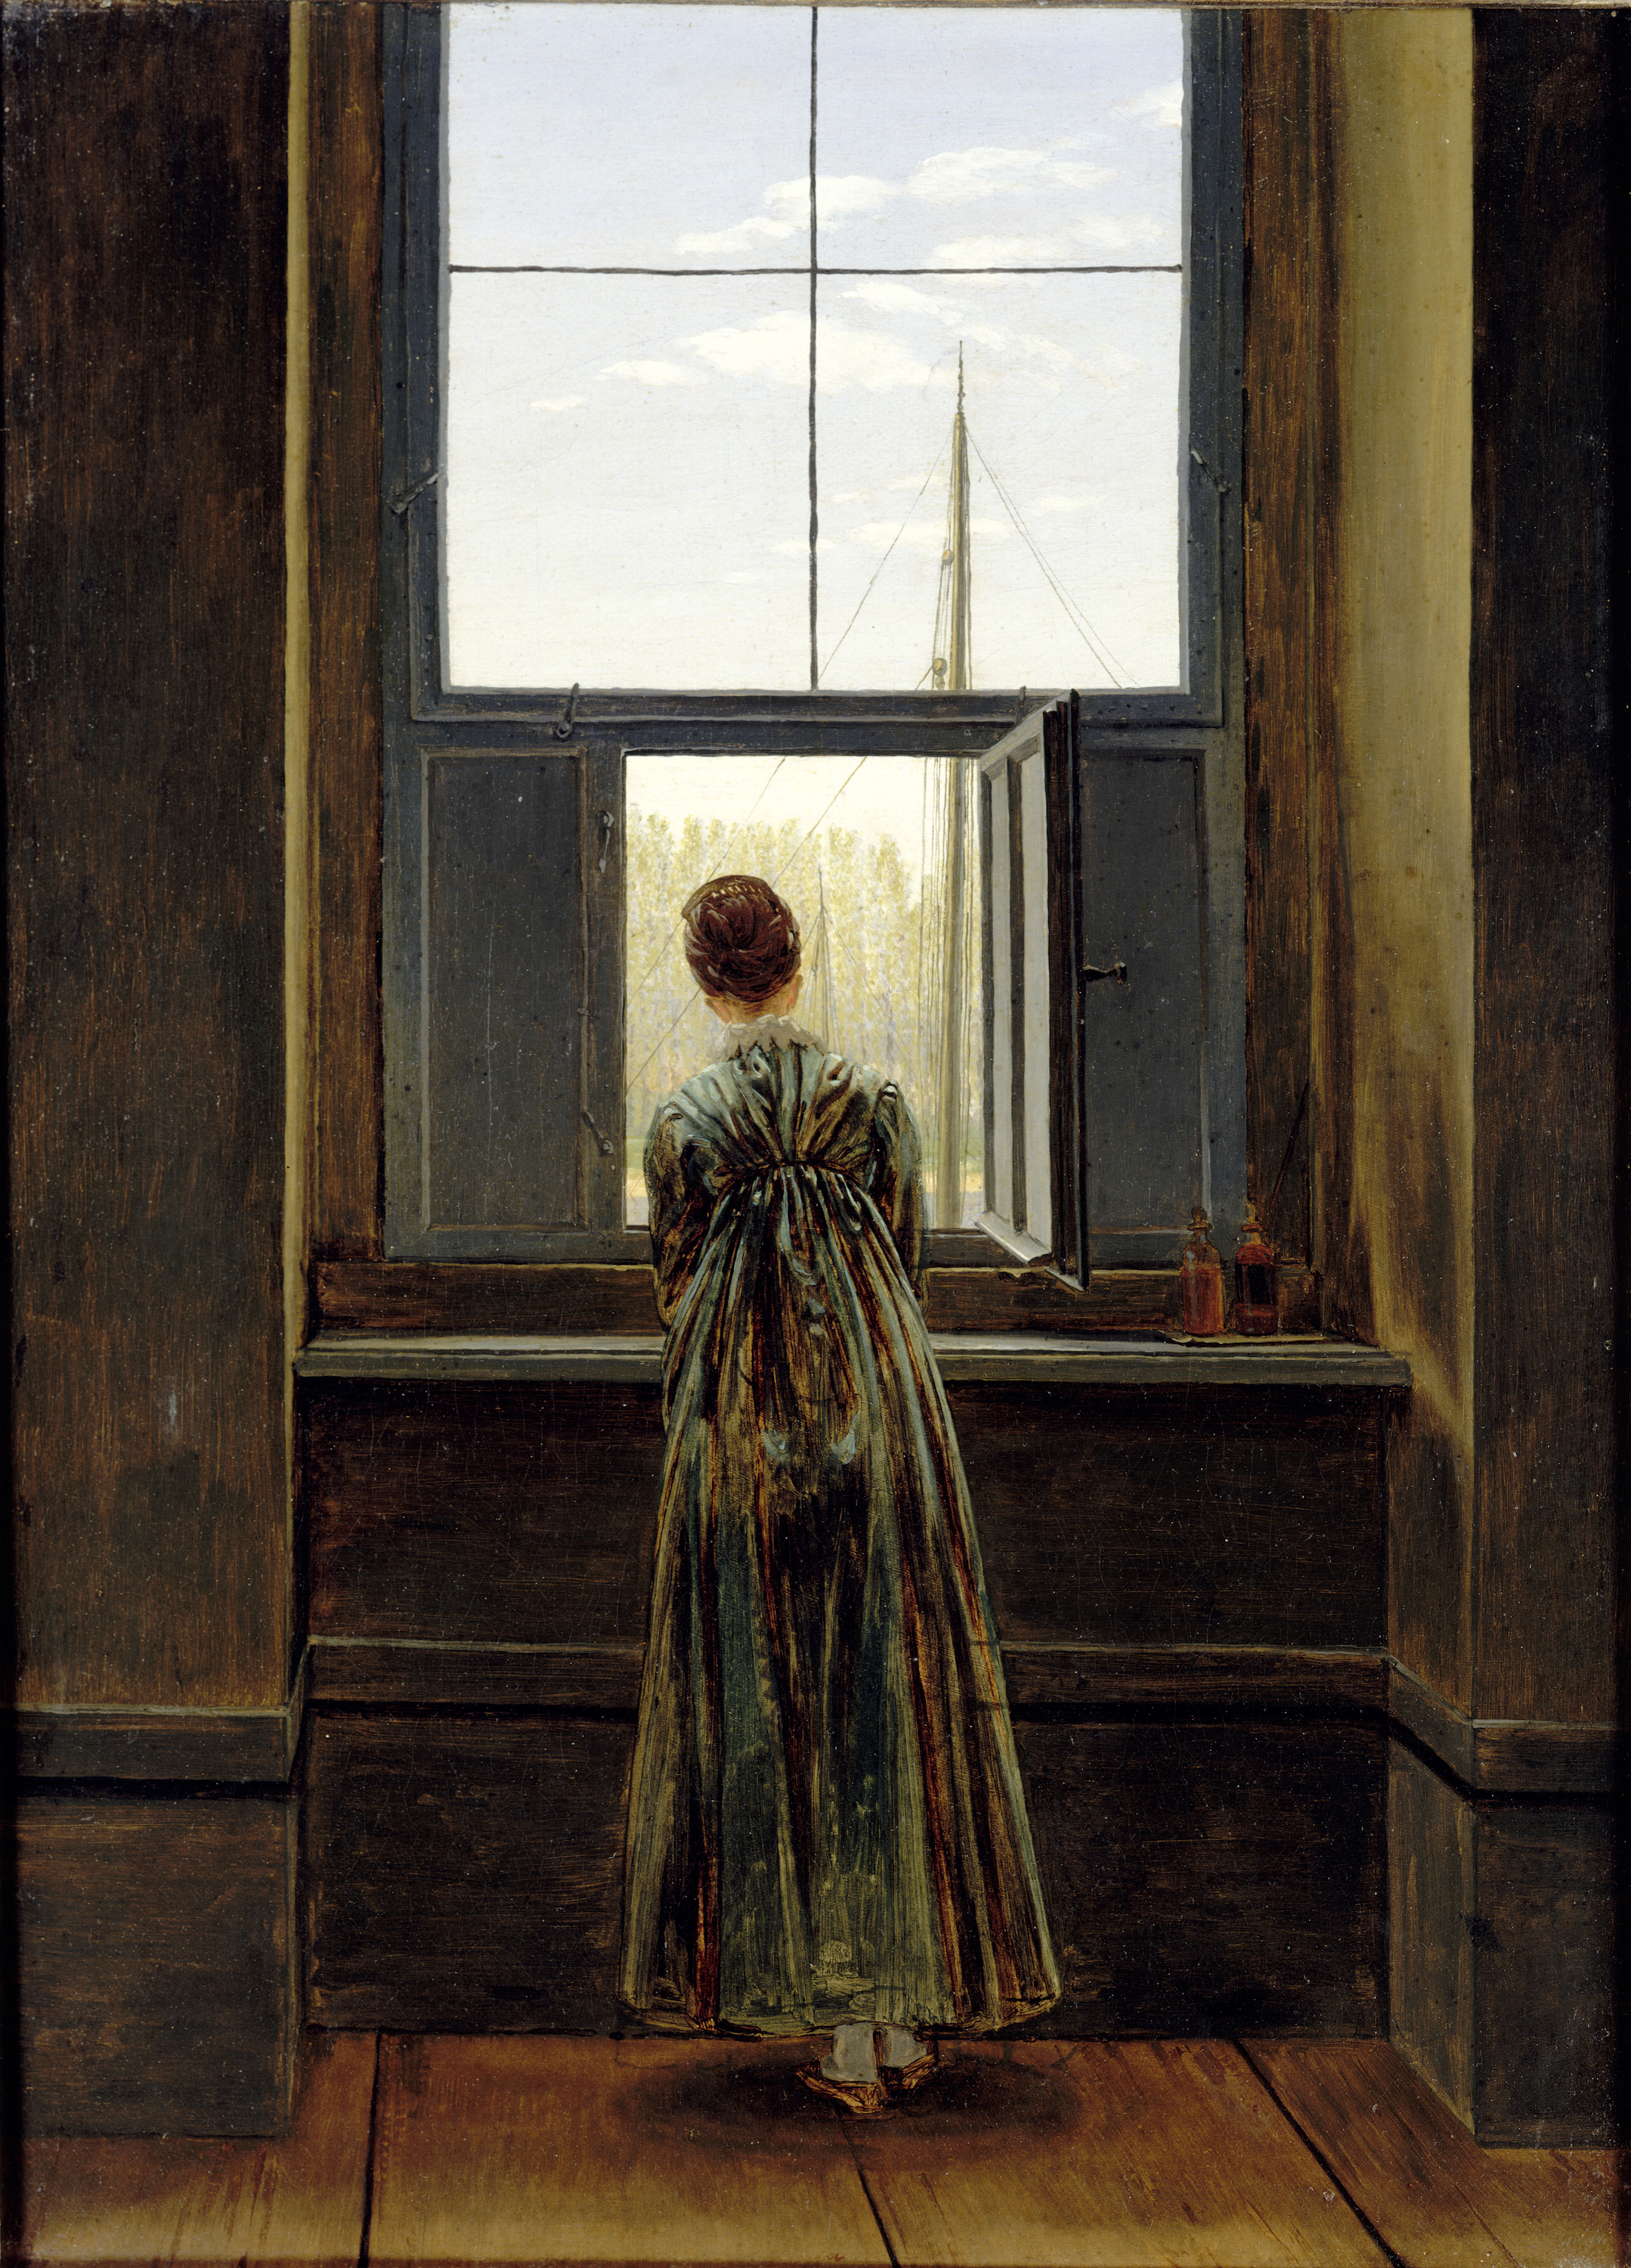 Mujer en la ventana by Caspar David Friedrich - 1822 - 73 x 44,1 cm Antigua Galería Nacional de Berlín